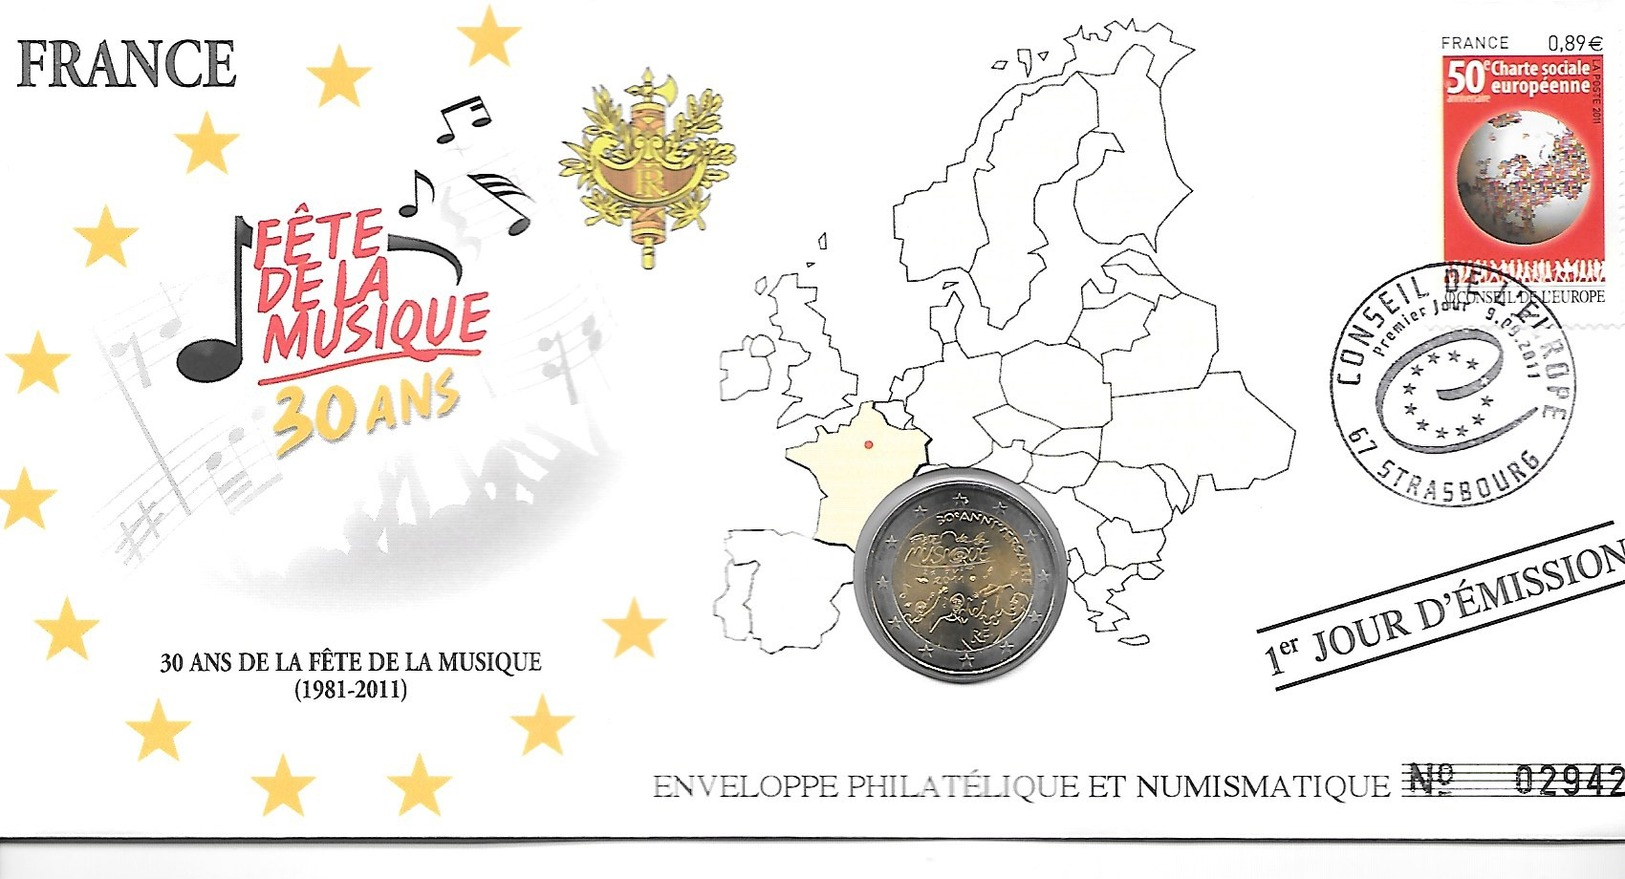 EURO FRANCE FDC ENVELOPPE PHILATELIQUE ET NUMISMATIQUE DU 1er JOUR D'éMISSION (A VOIR) - France